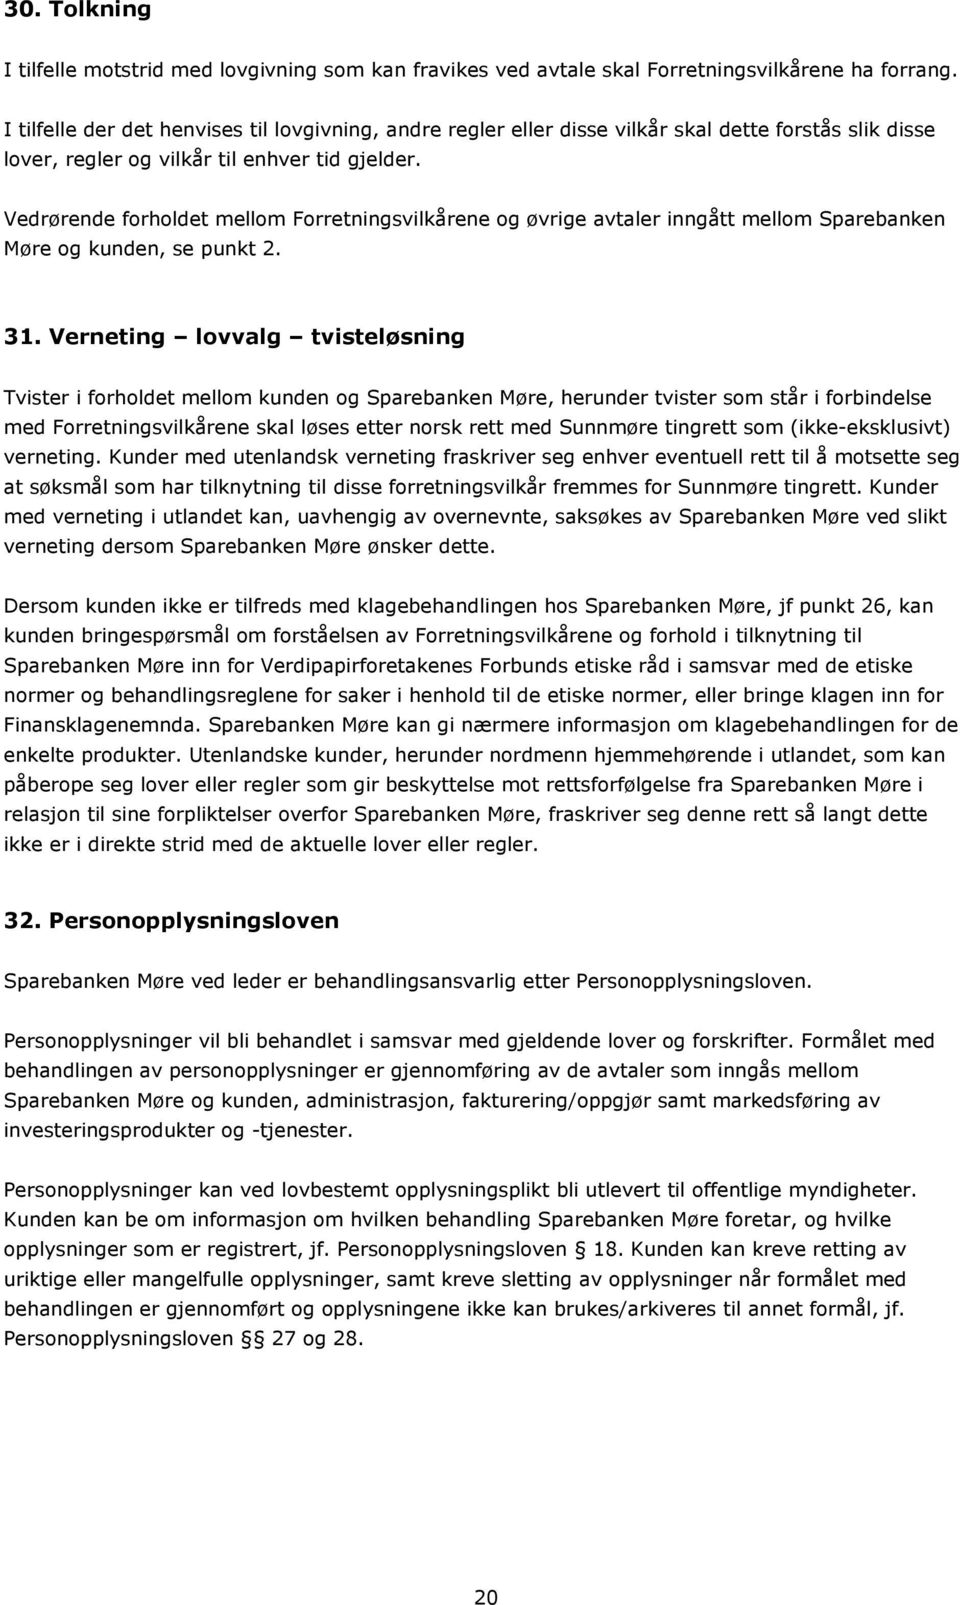 Vedrørende forholdet mellom Forretningsvilkårene og øvrige avtaler inngått mellom Sparebanken Møre og kunden, se punkt 2. 31.